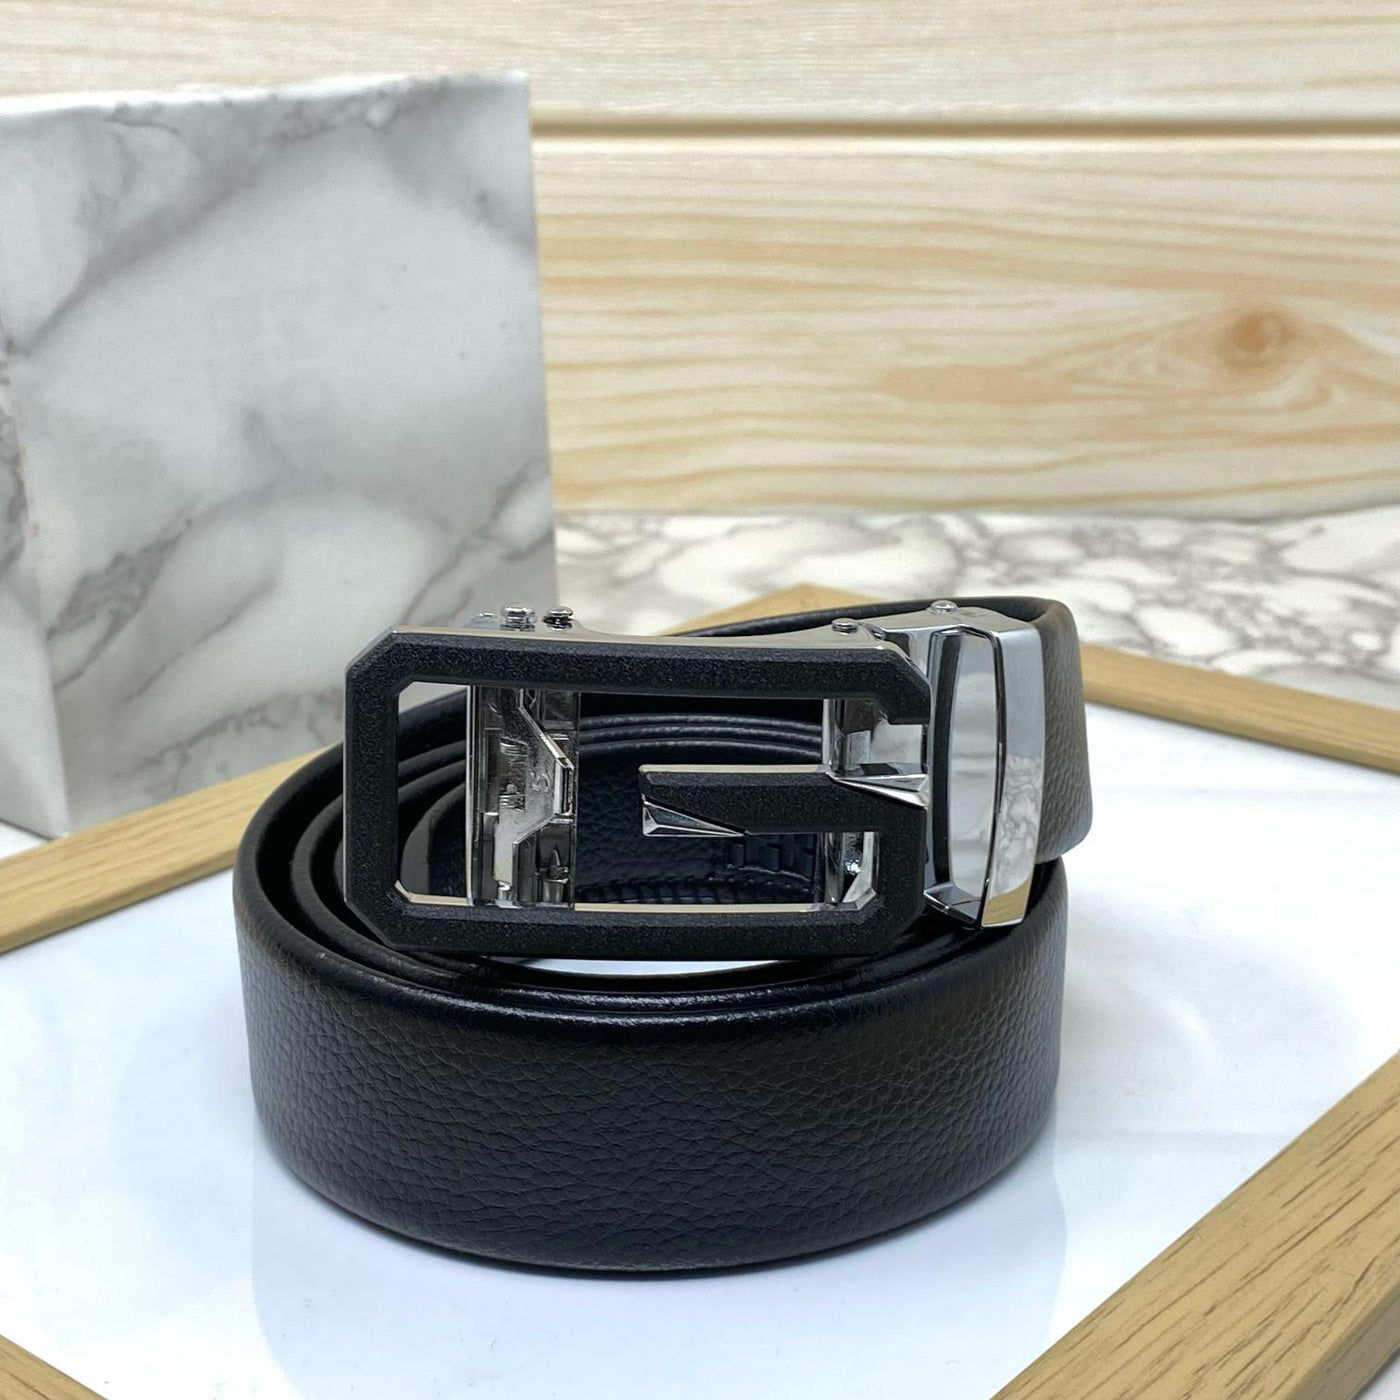 Single G Shape Fashionable Formal Belt For Men-UniqueandClassy